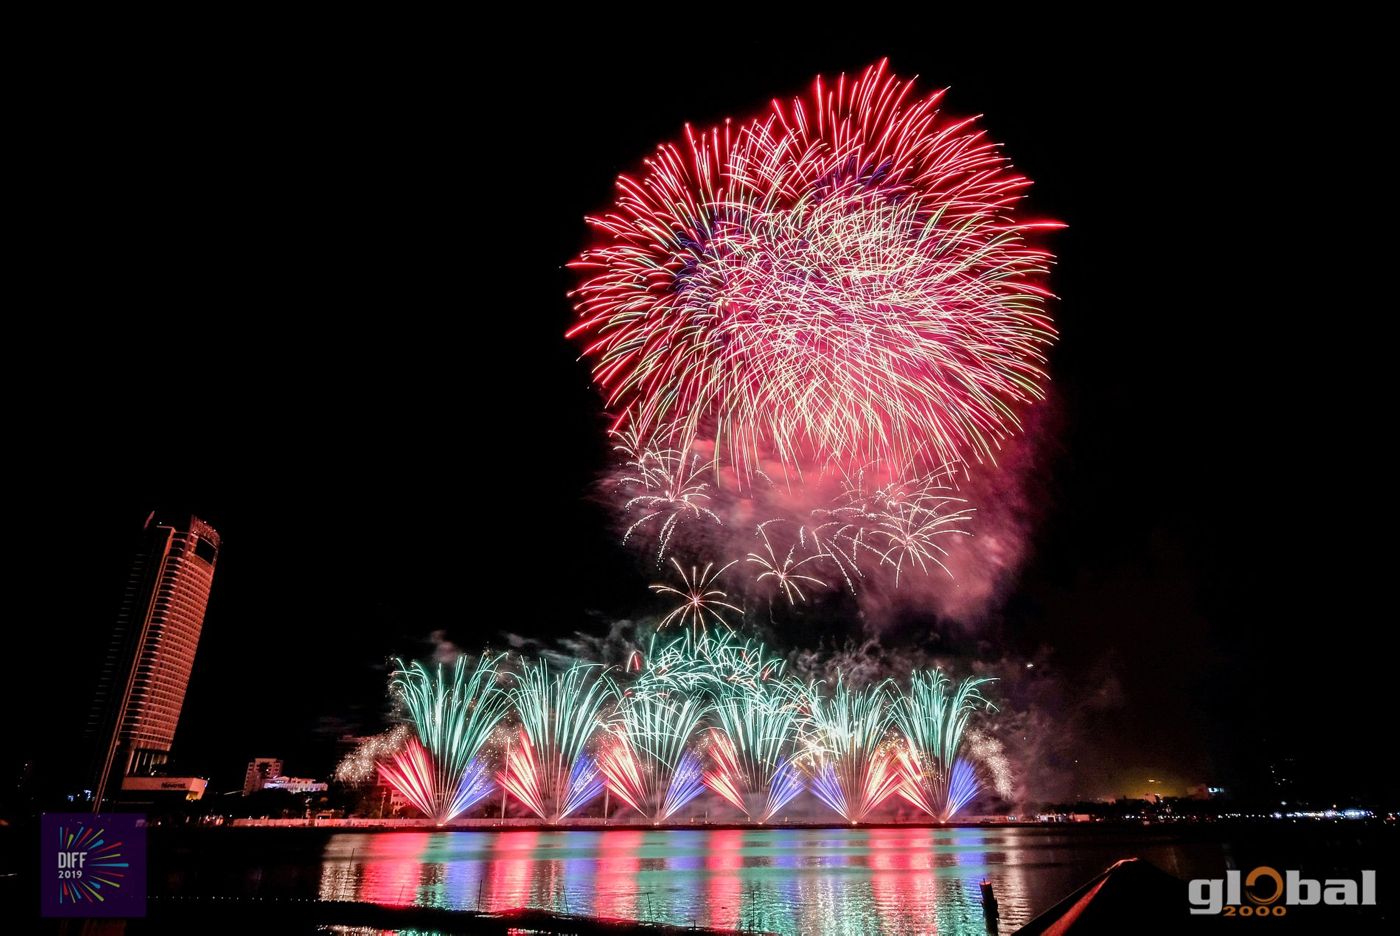 Da Nang International Fireworks Festival 2019